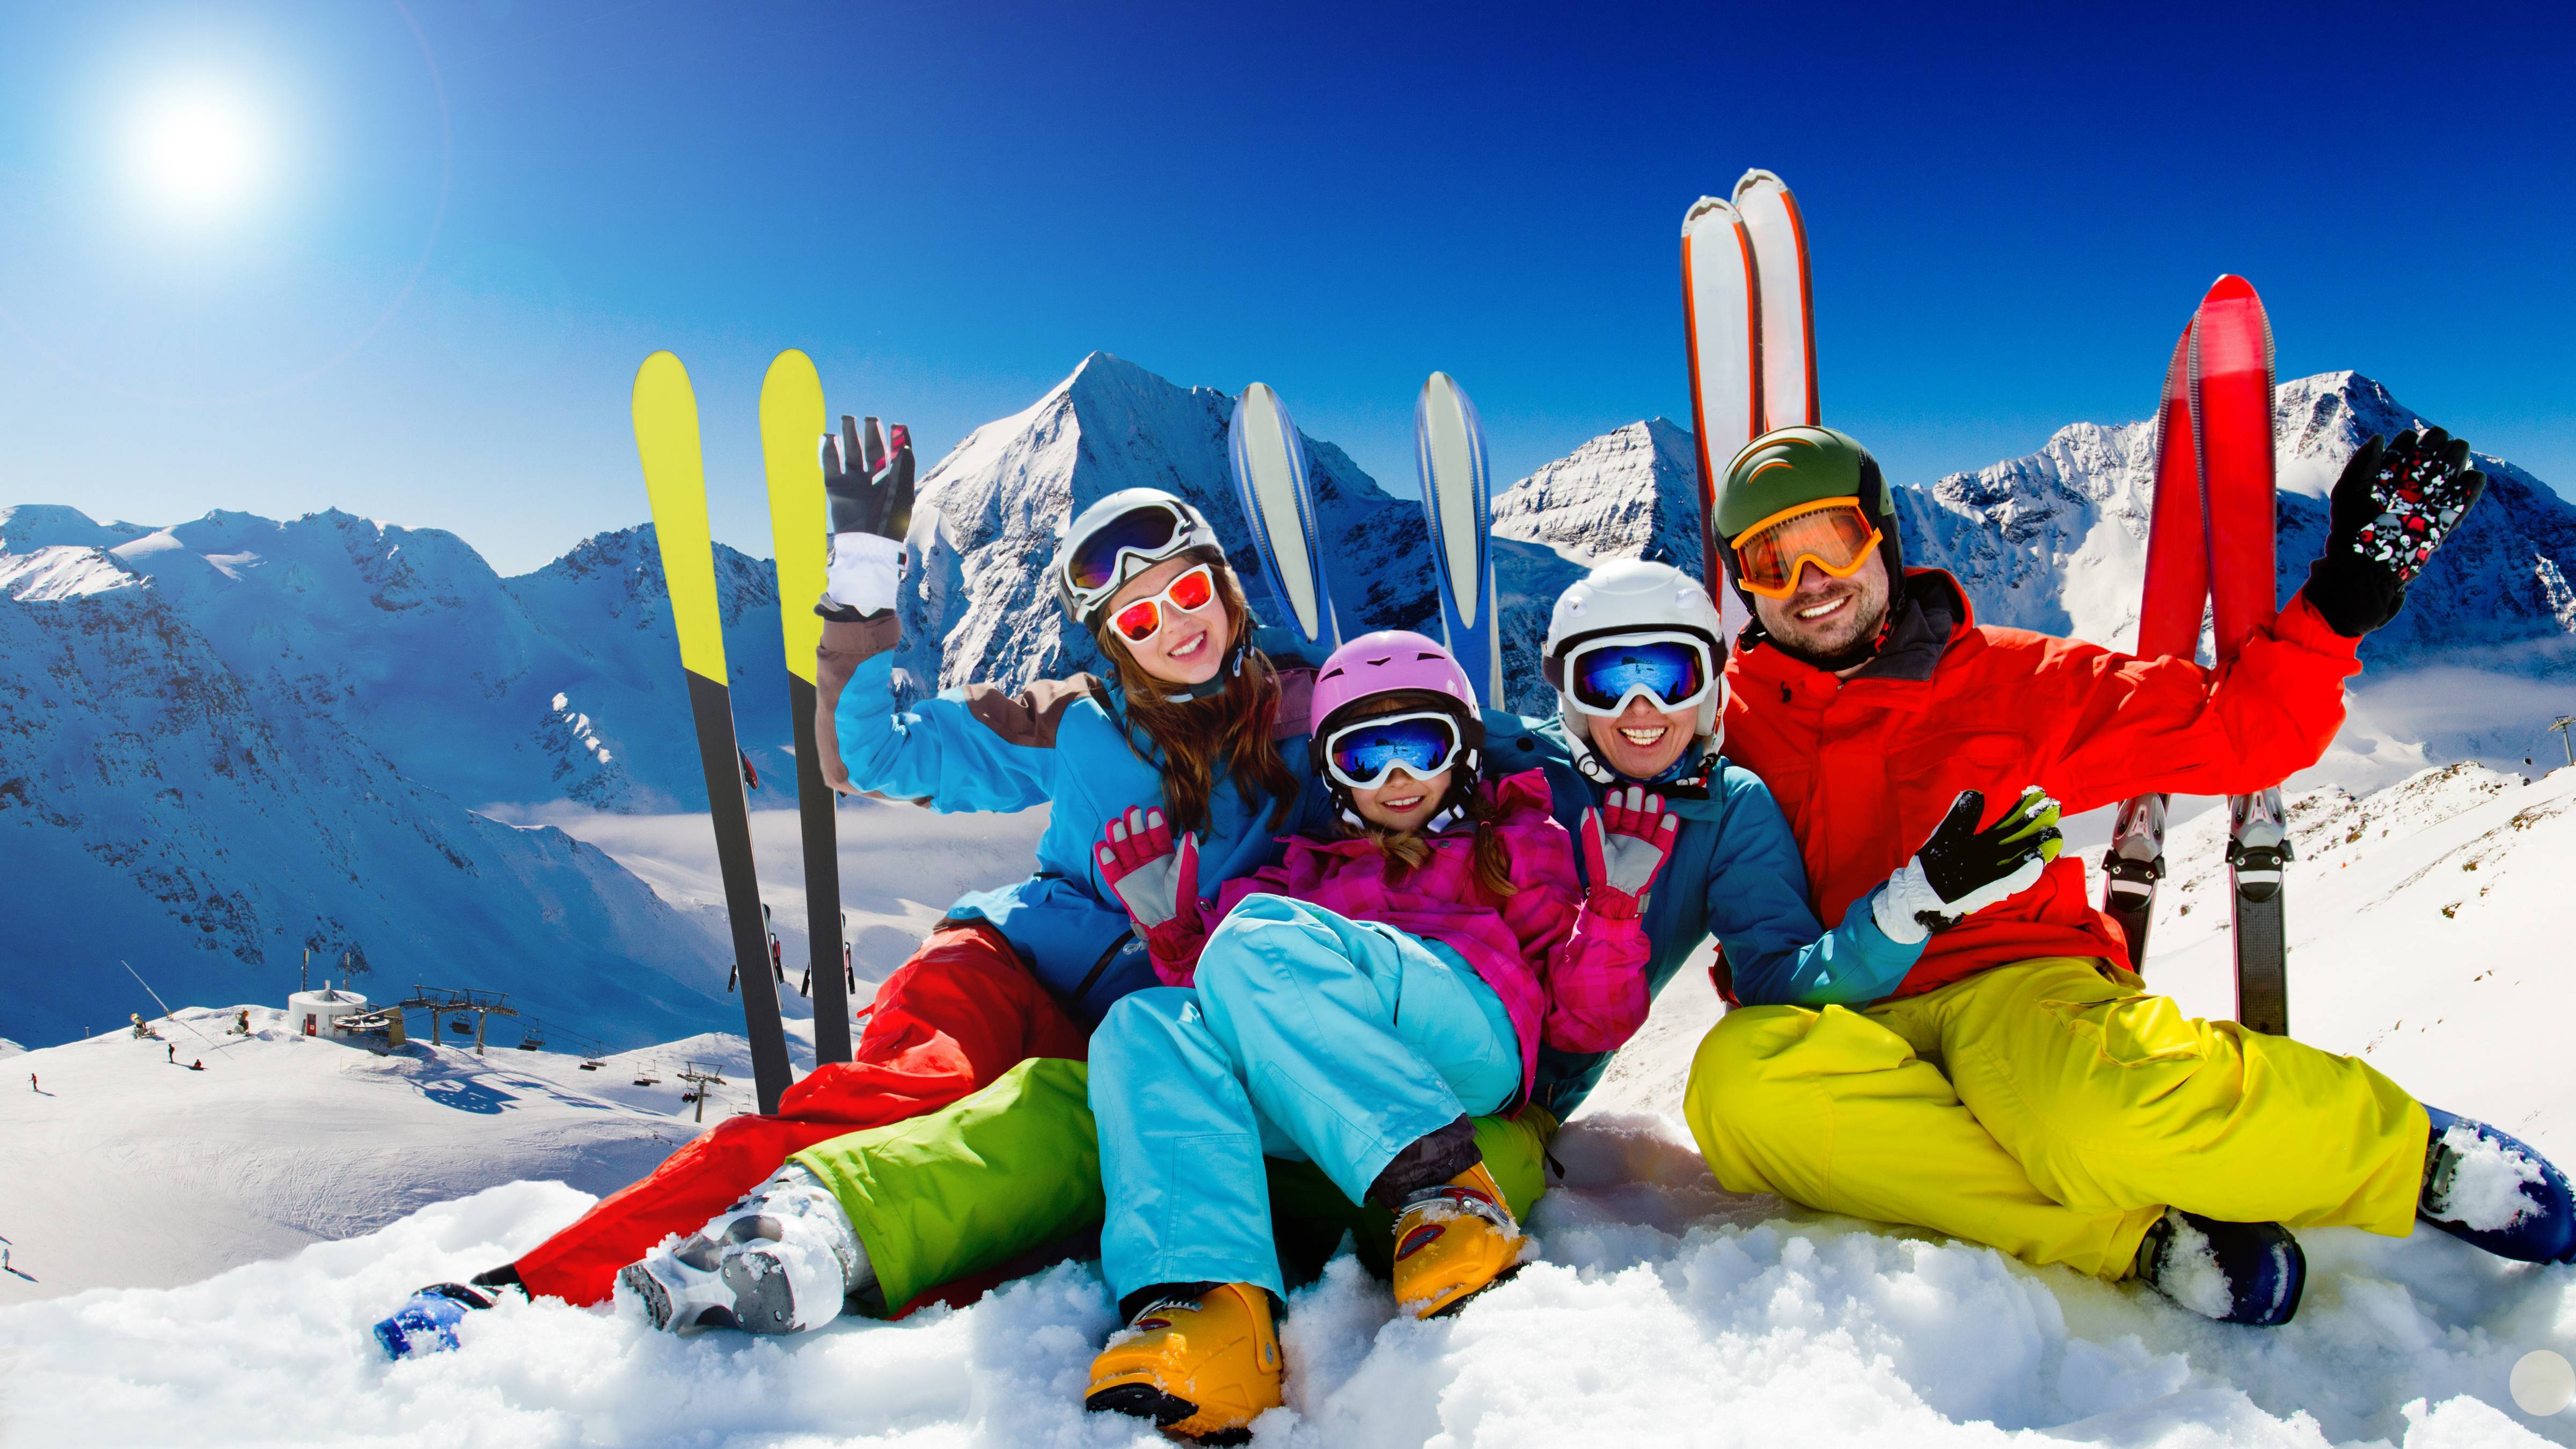 Катание на горнолыжном курорте. Семья на горных лыжах. Горнолыжный спорт. Семья катается на лыжах в горах. Зимний курорт.